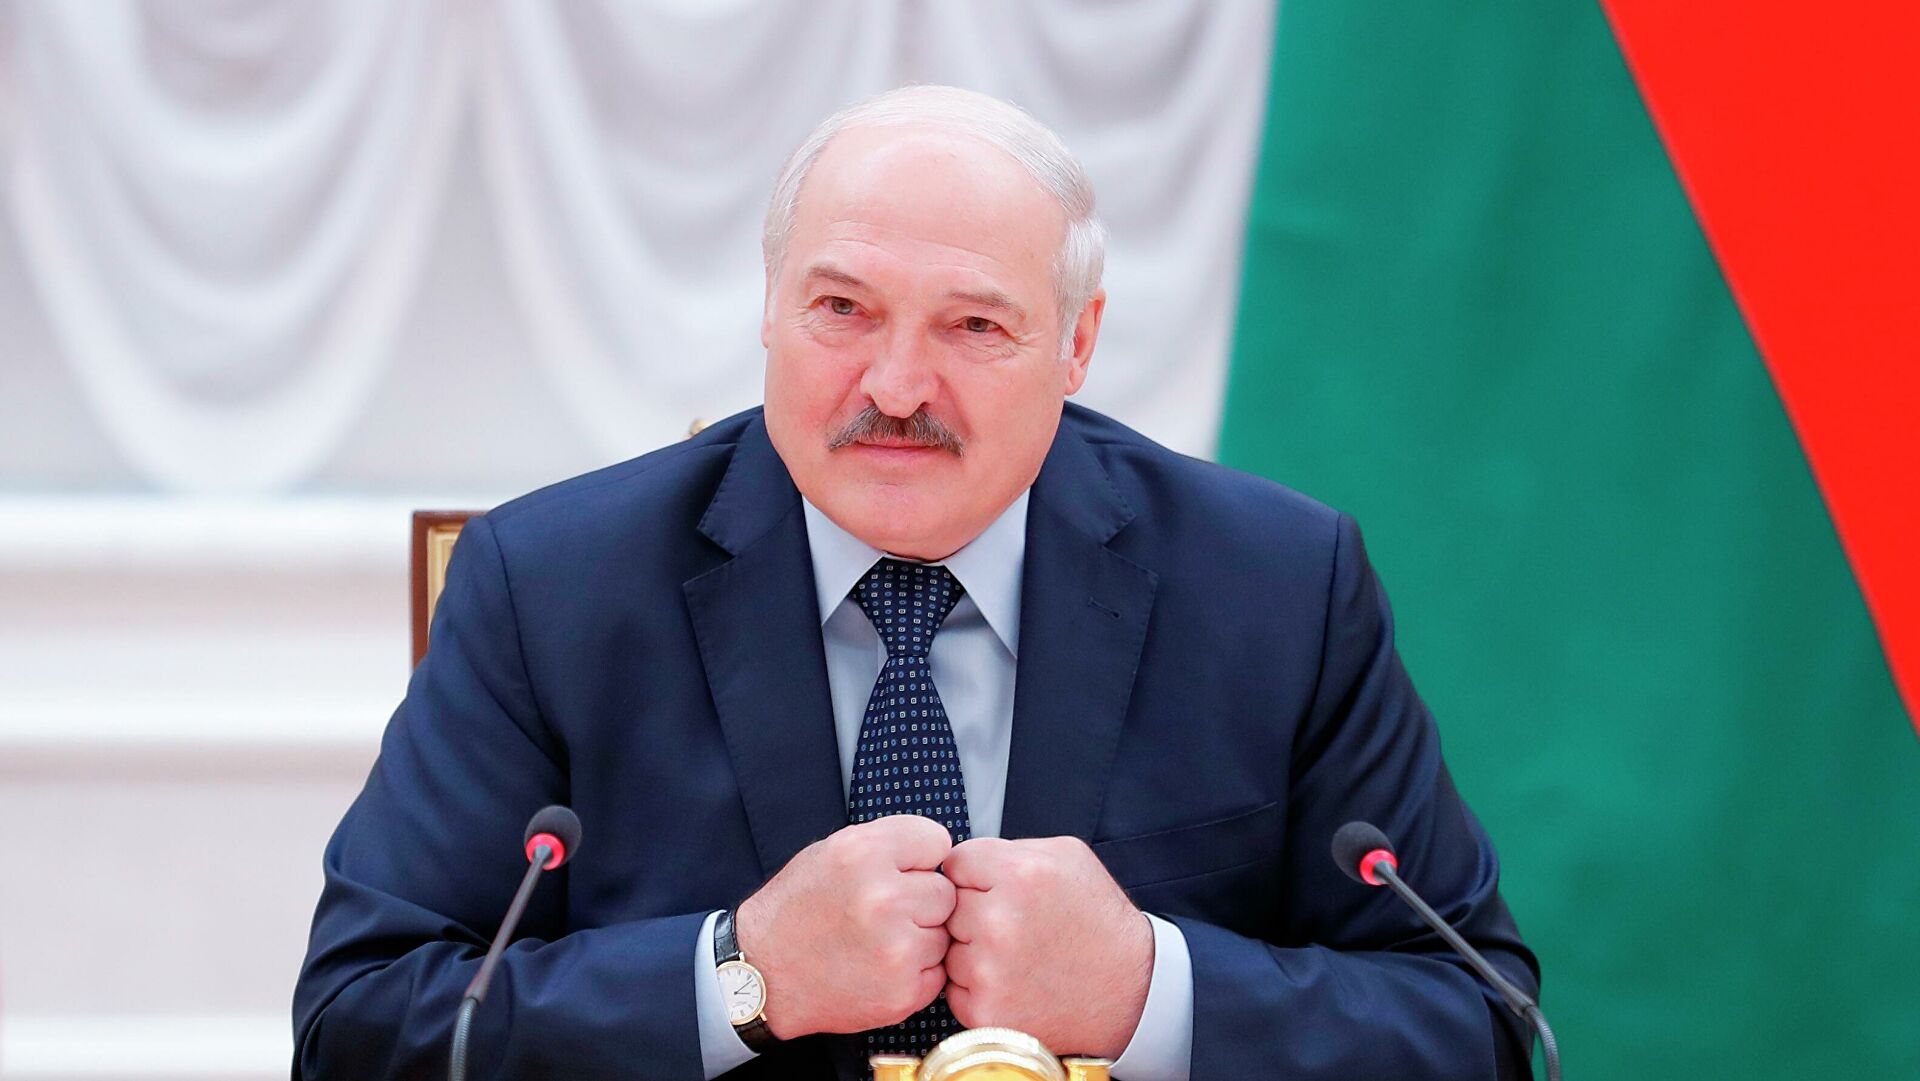 Портников: Лукашенко поставил жирный крест на будущих отношениях с Украиной